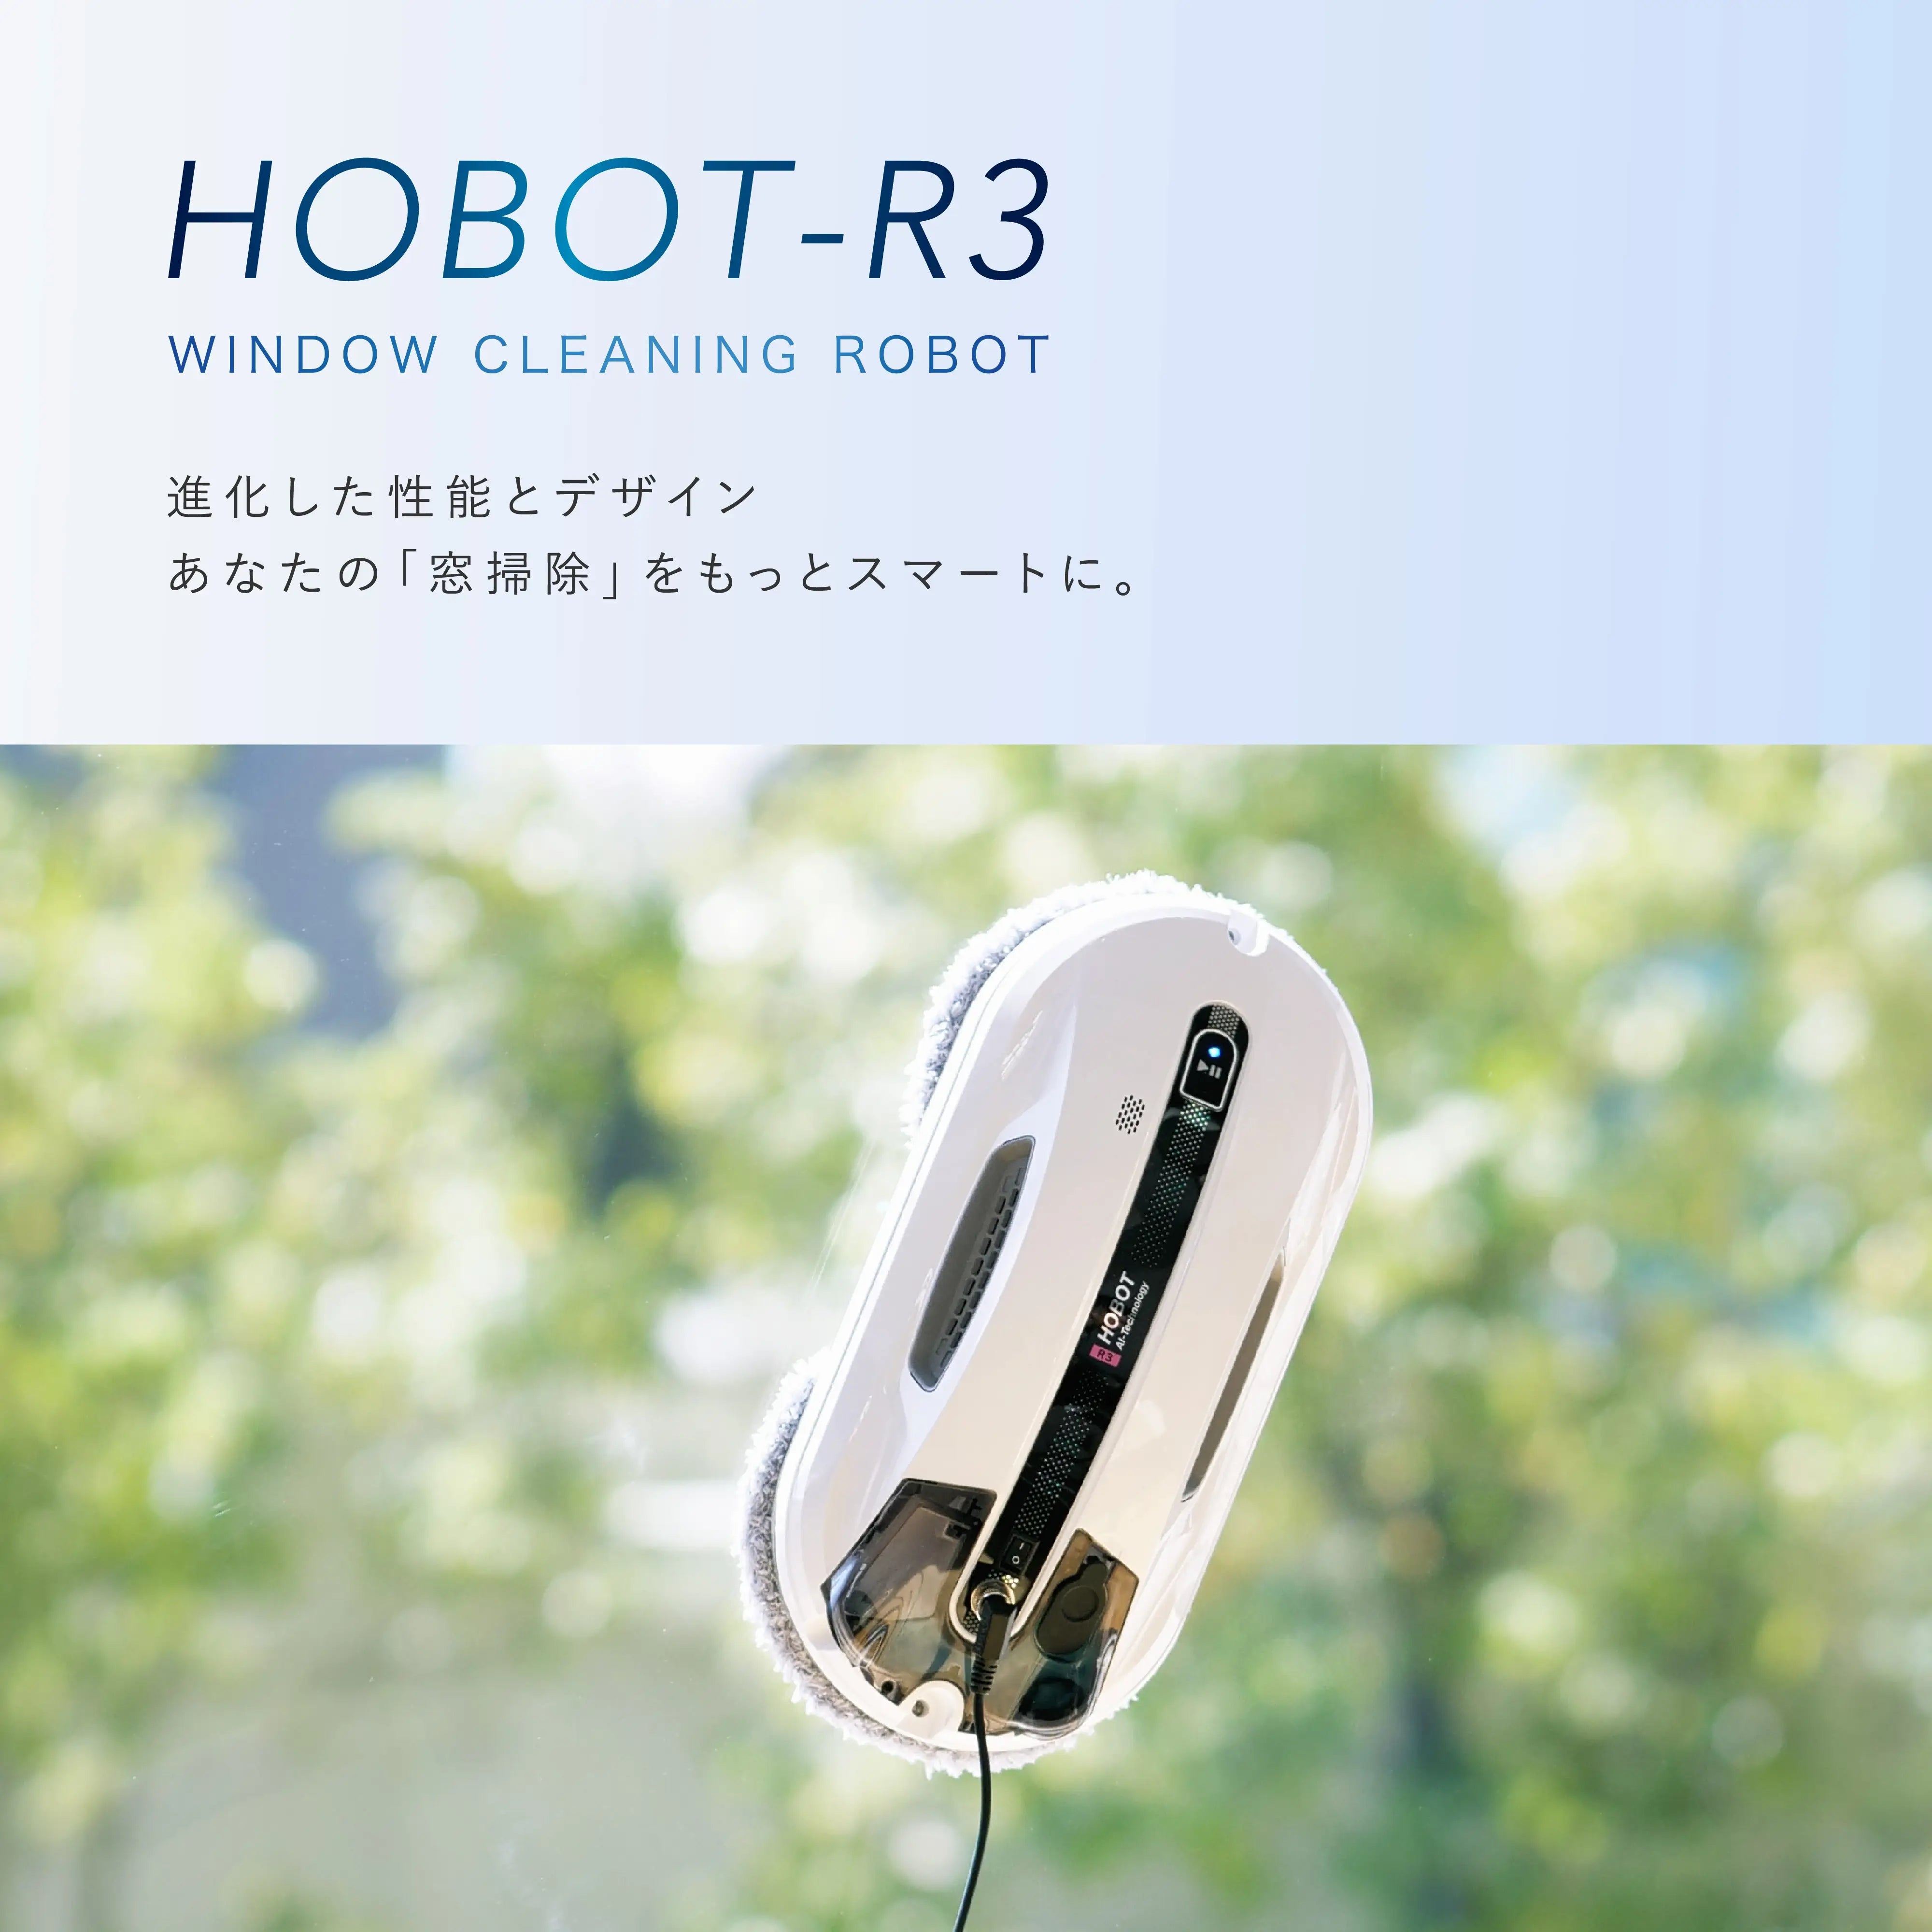 自動窓掃除ロボット HOBOT-R3 - 生活家電